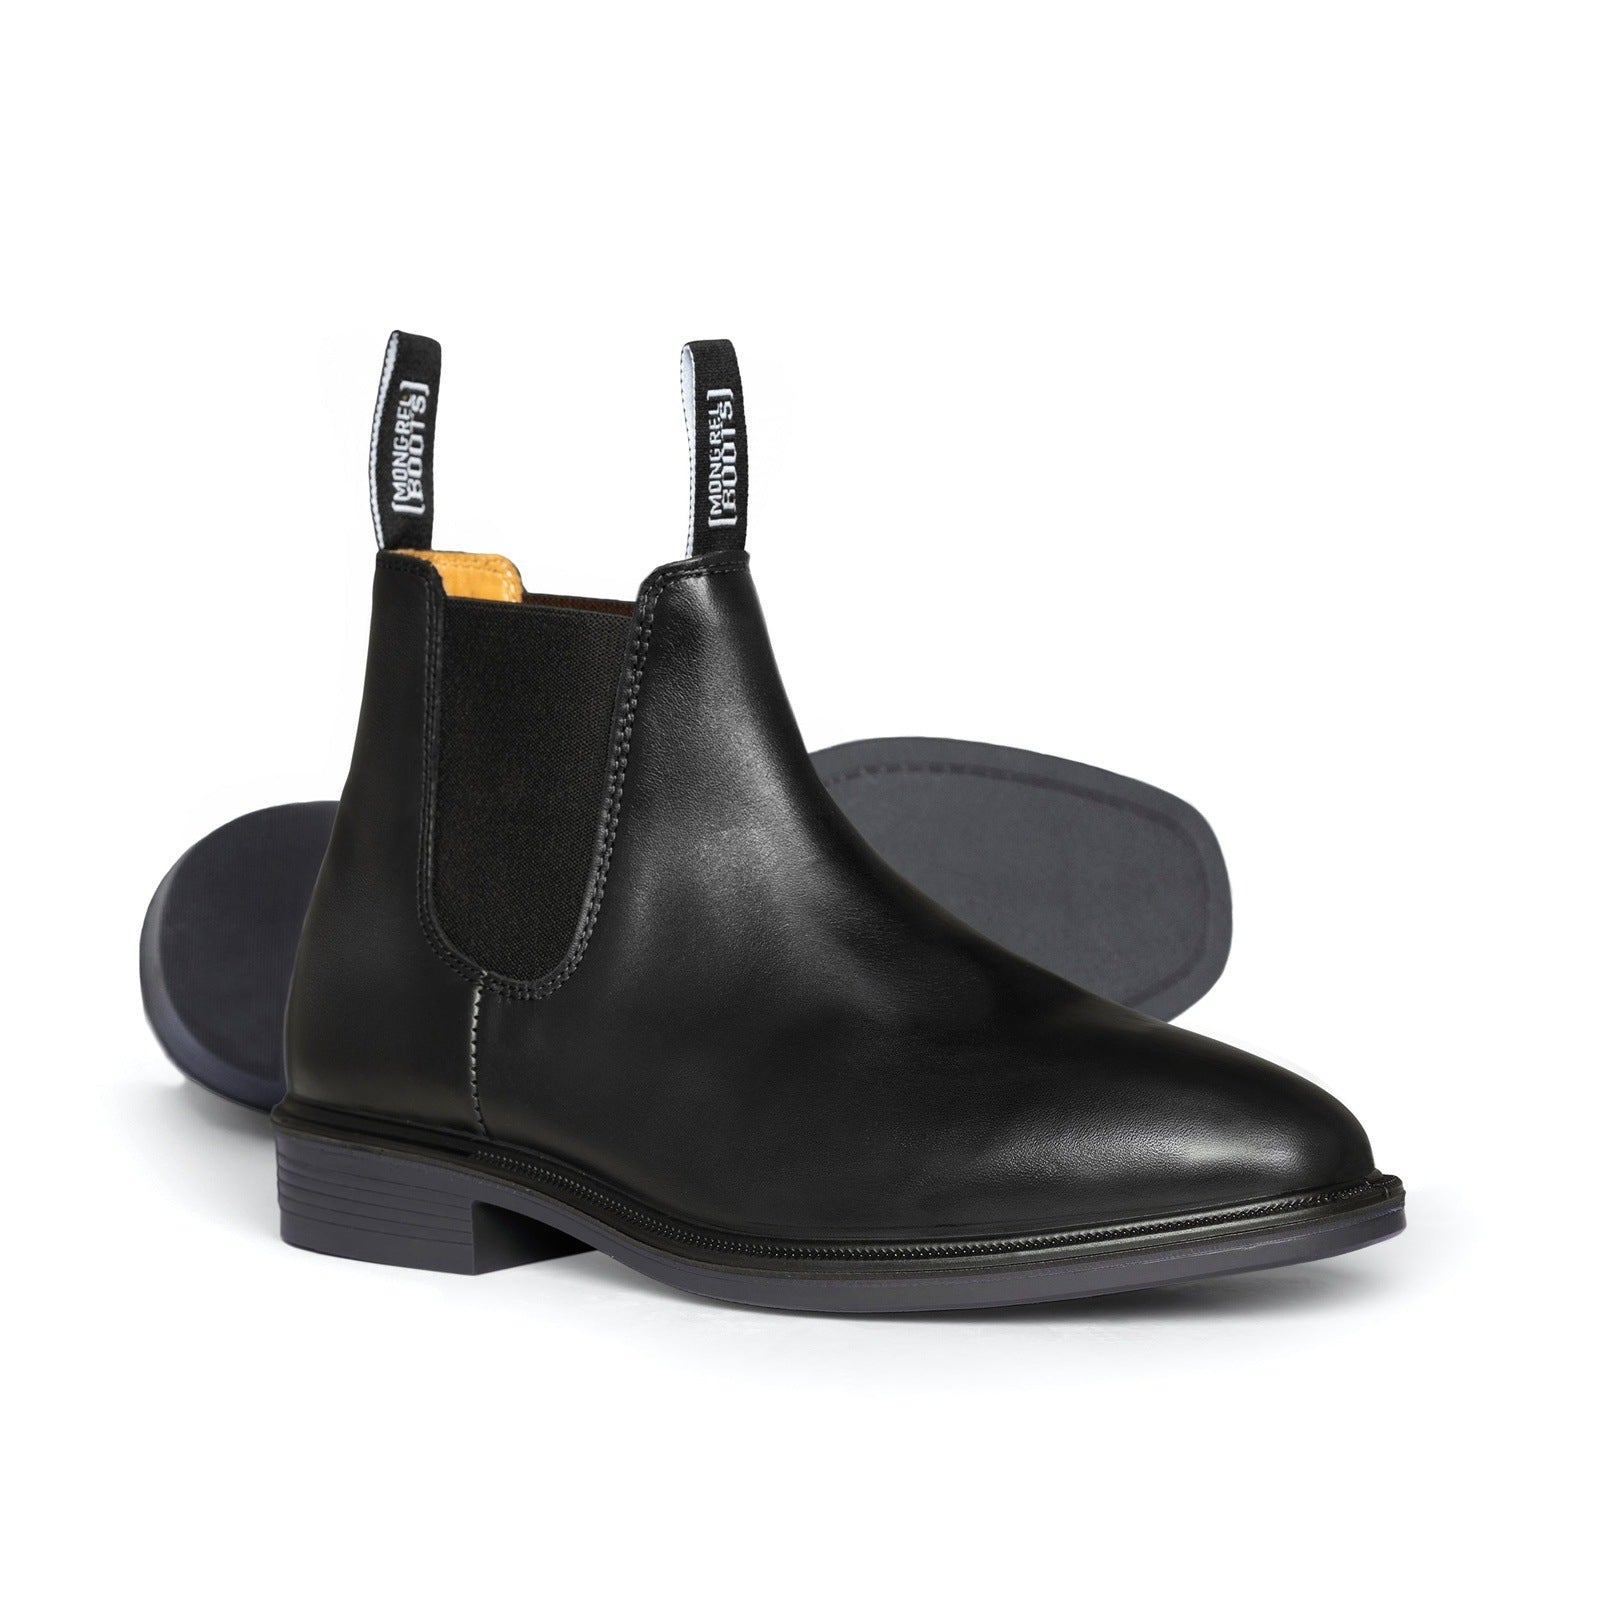 Mongrel Black Riding Boot - 805025 | Blue Heeler Boots